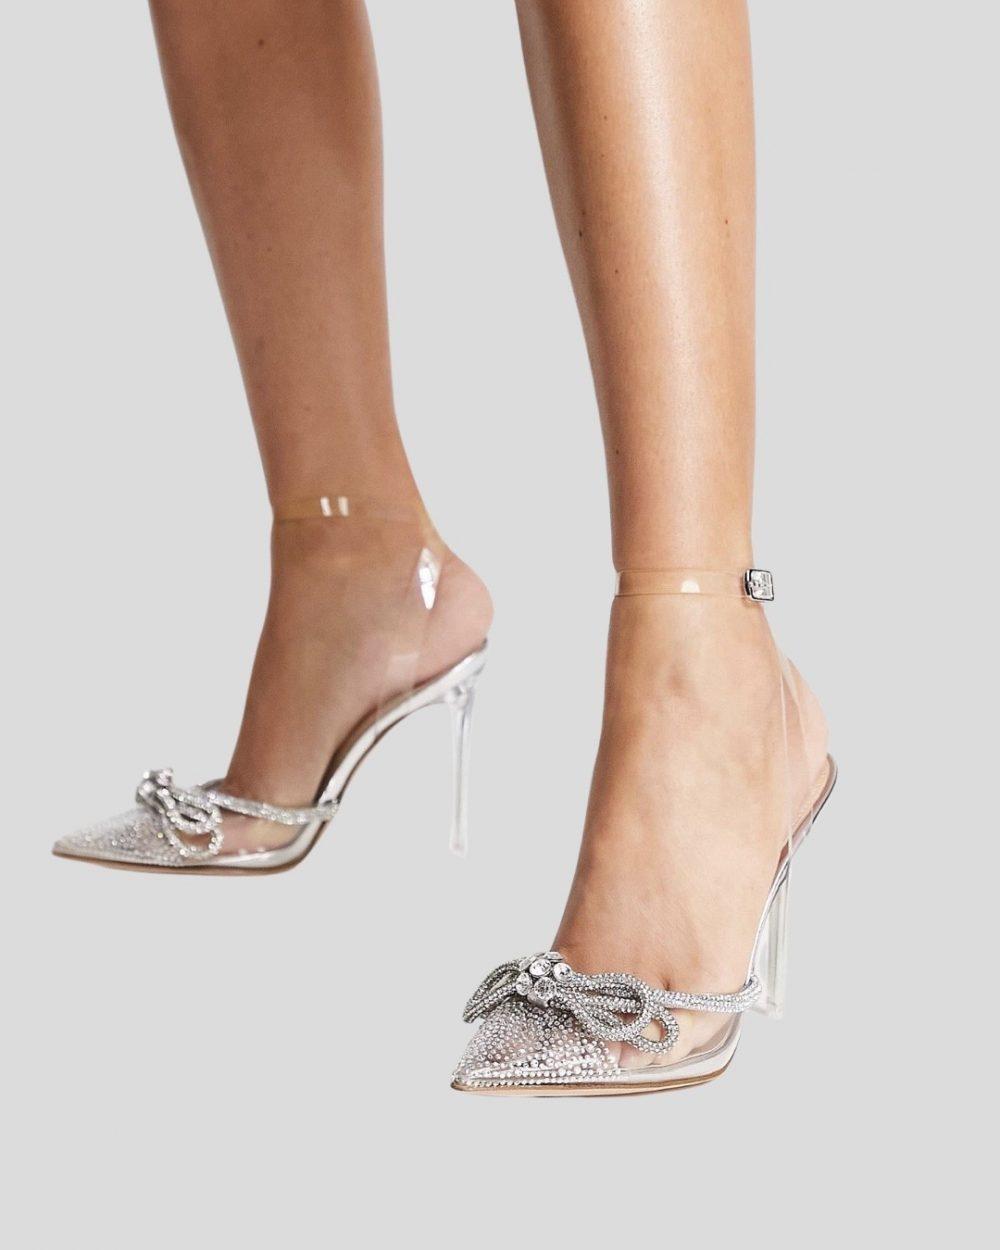 valance-diamante-trim-heeled-shoes-onrotate